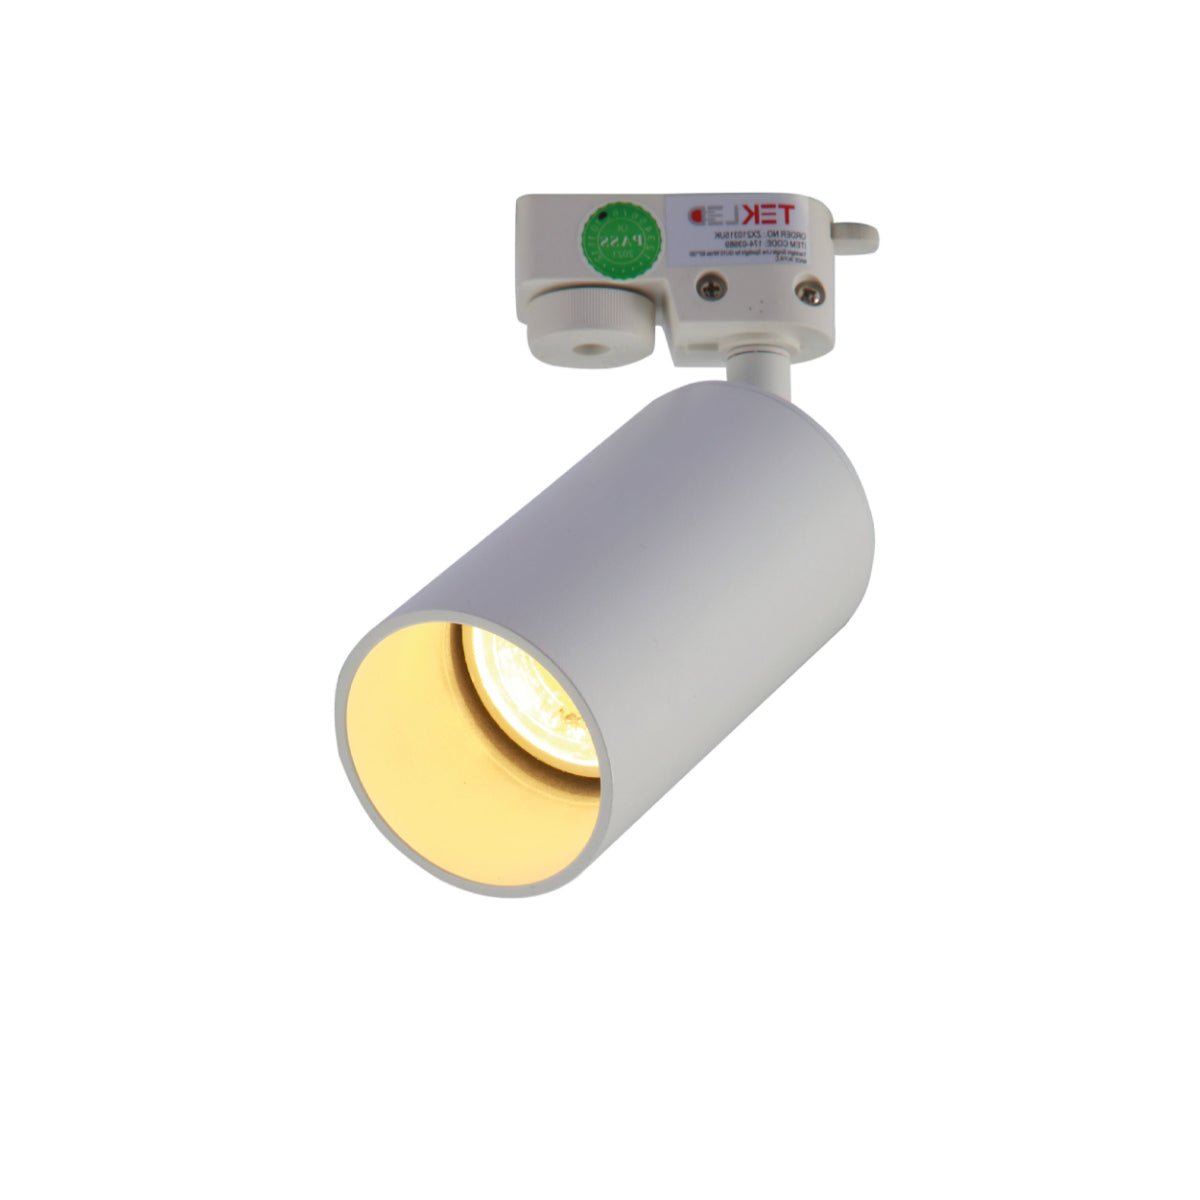 Main image of Tracklight Single Line Spotlight For GU10 White L | TEKLED 174-03989